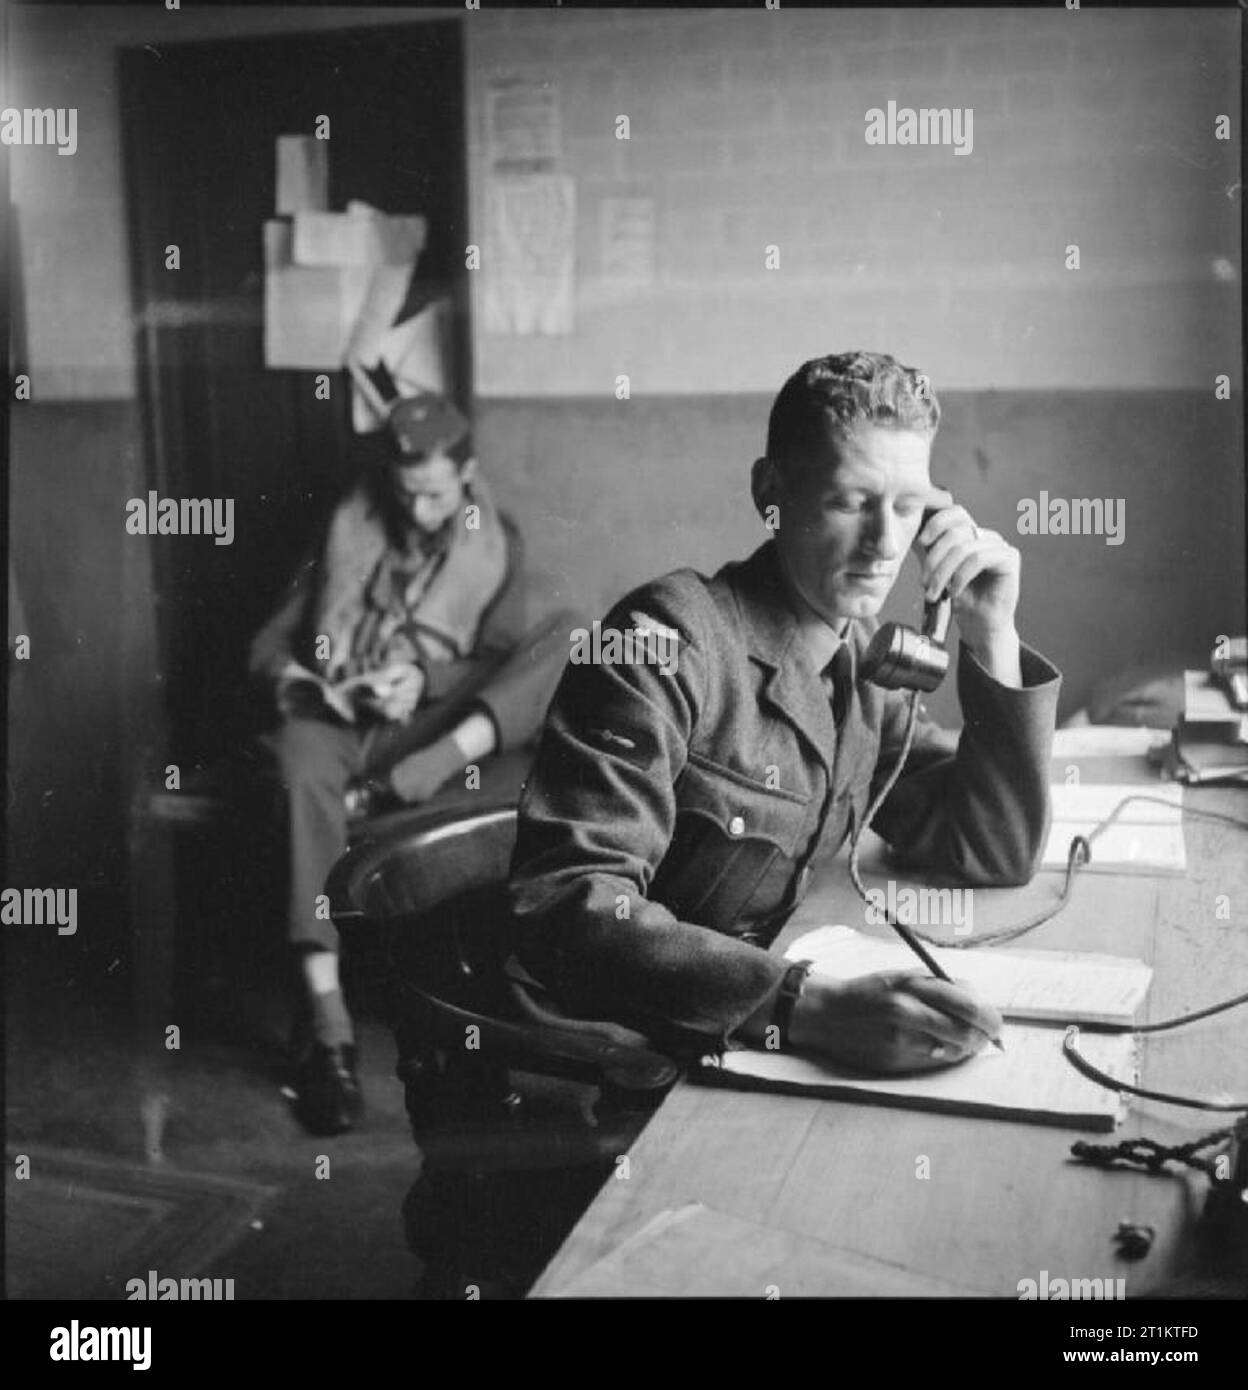 Amerikaner in Großbritannien - die Arbeit der Nr. 121 (Eagle) Squadron RAF Rochford, Essex, August 1942, in der Zerstreuung Hütte am Rochford Flugplatz, der telefonist meldet einen Anruf vom Kontrollturm, der bestätigt, dass 12 Spitfires erfolgreich in der Luft sind. Im Hintergrund eine "Reserve"-Sägenparameters pilot liest ein Buch. Stockfoto